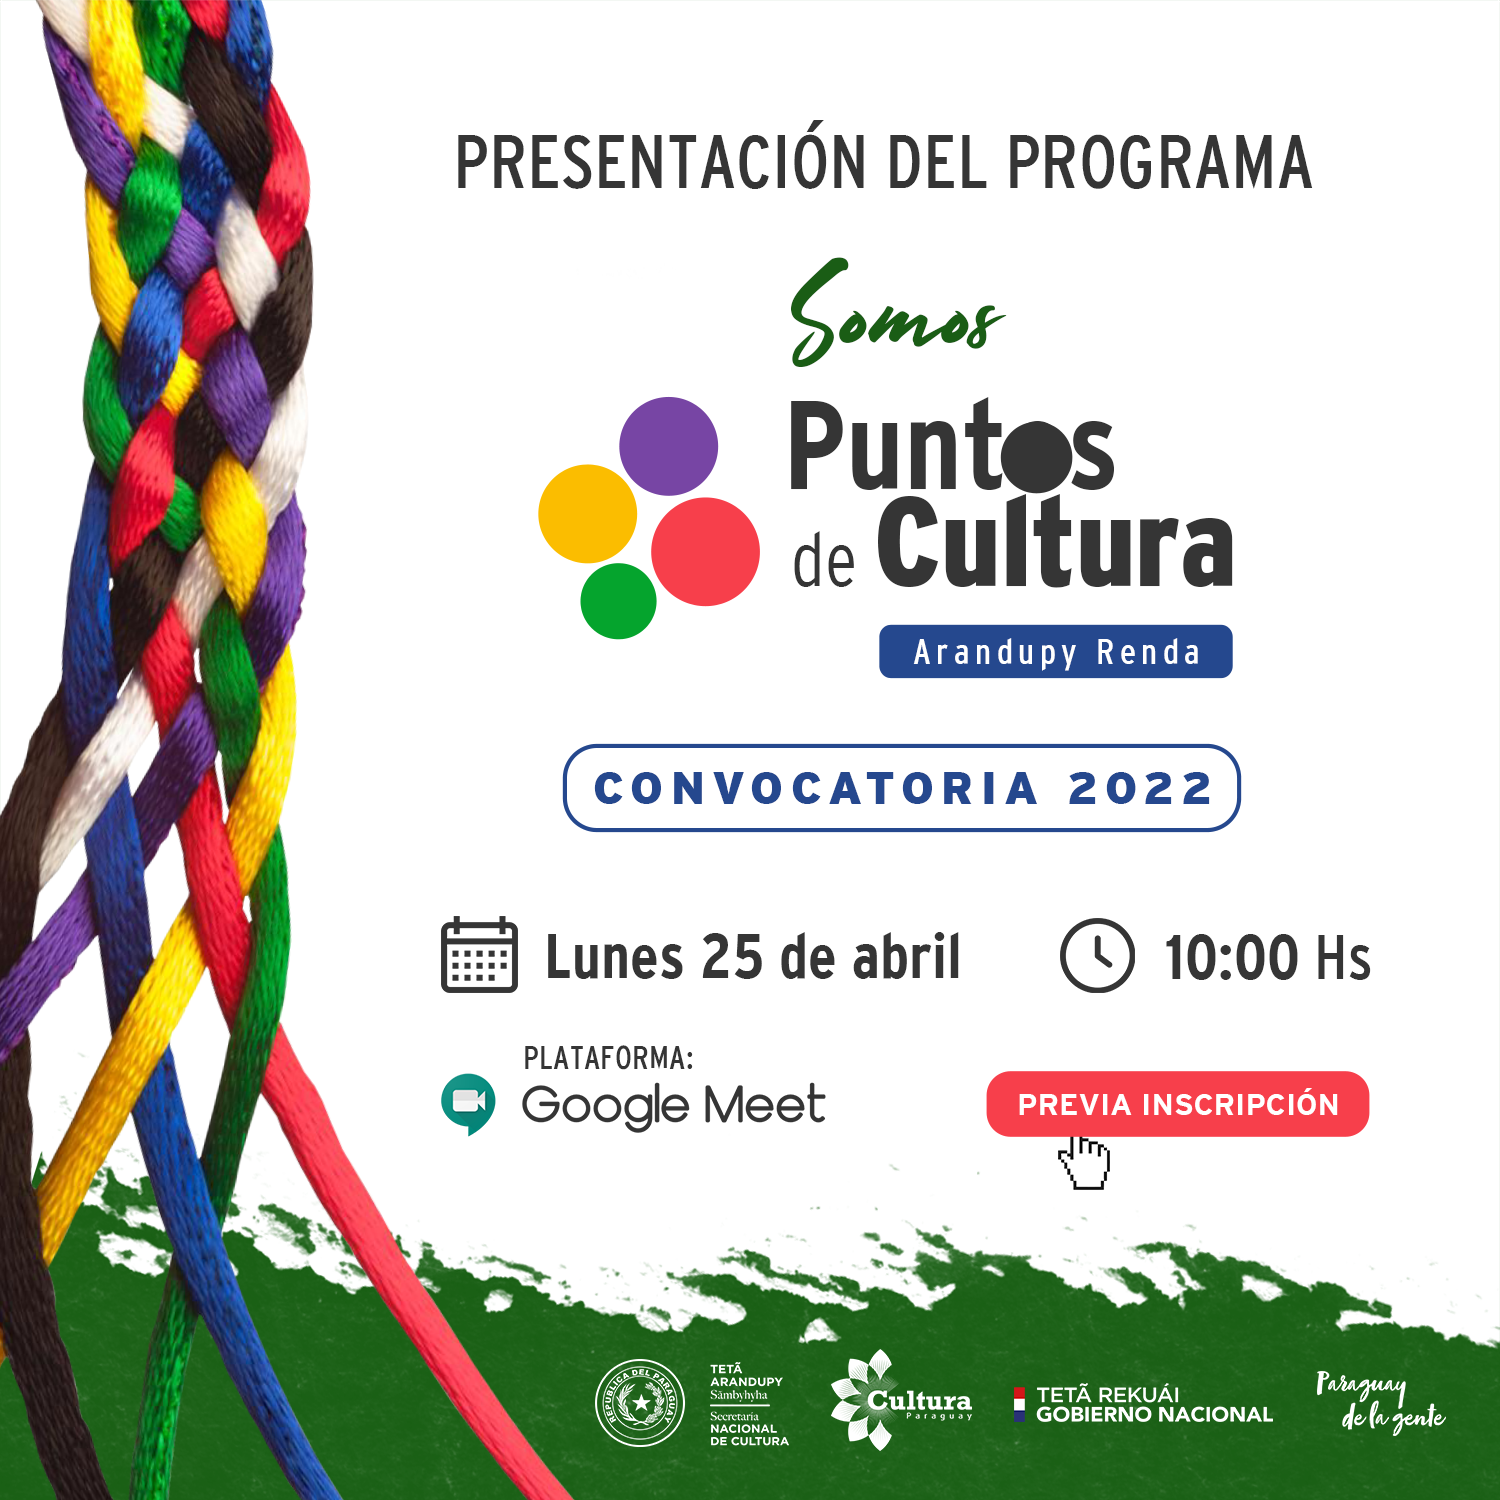 Programa Puntos de Cultura 2022 será presentado de forma virtual imagen